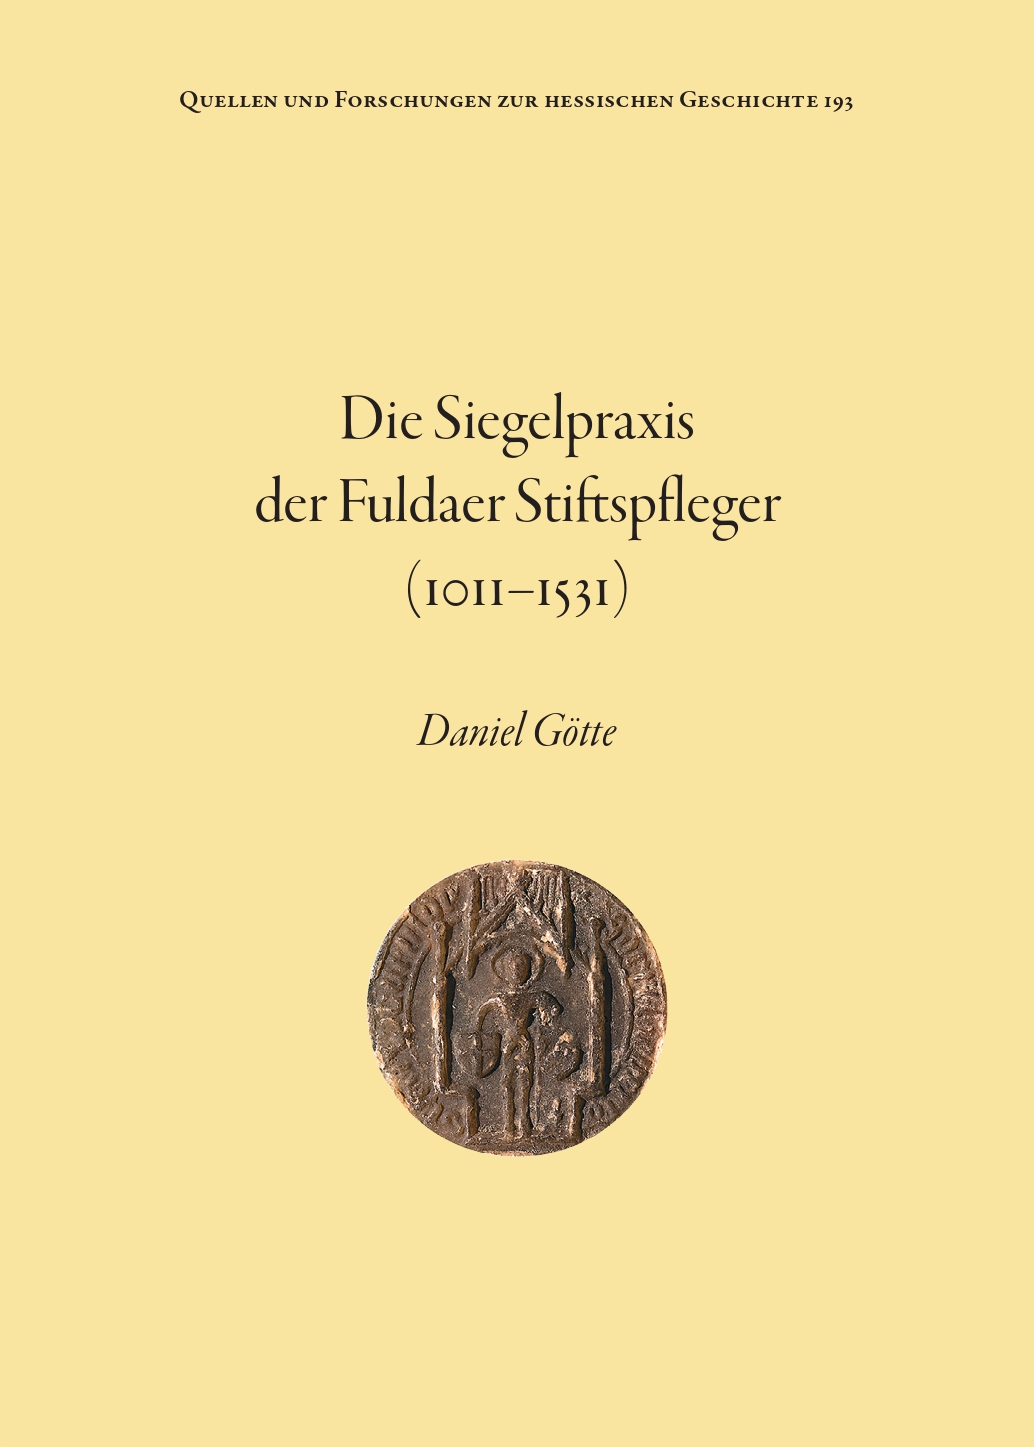 Daniel Götte: Die Siegelpraxis der Fuldaer Stiftspfleger (1011–1531)